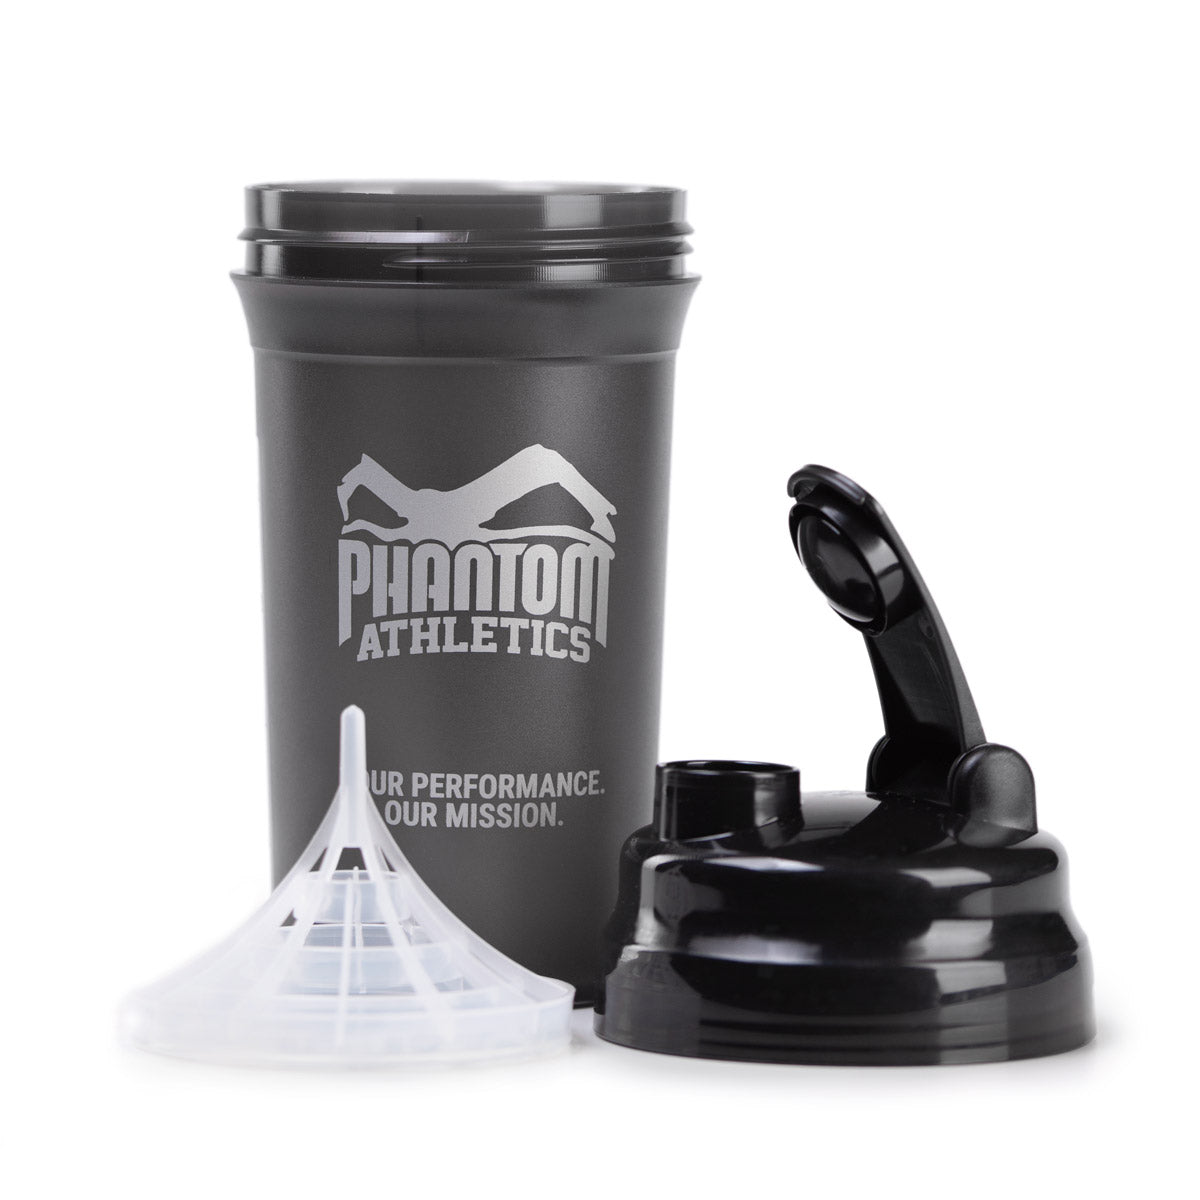 Die Einzelteile des Phantom Athletics Shakers bestehend aus Cup, Deckel und Sieb zum Mixen.